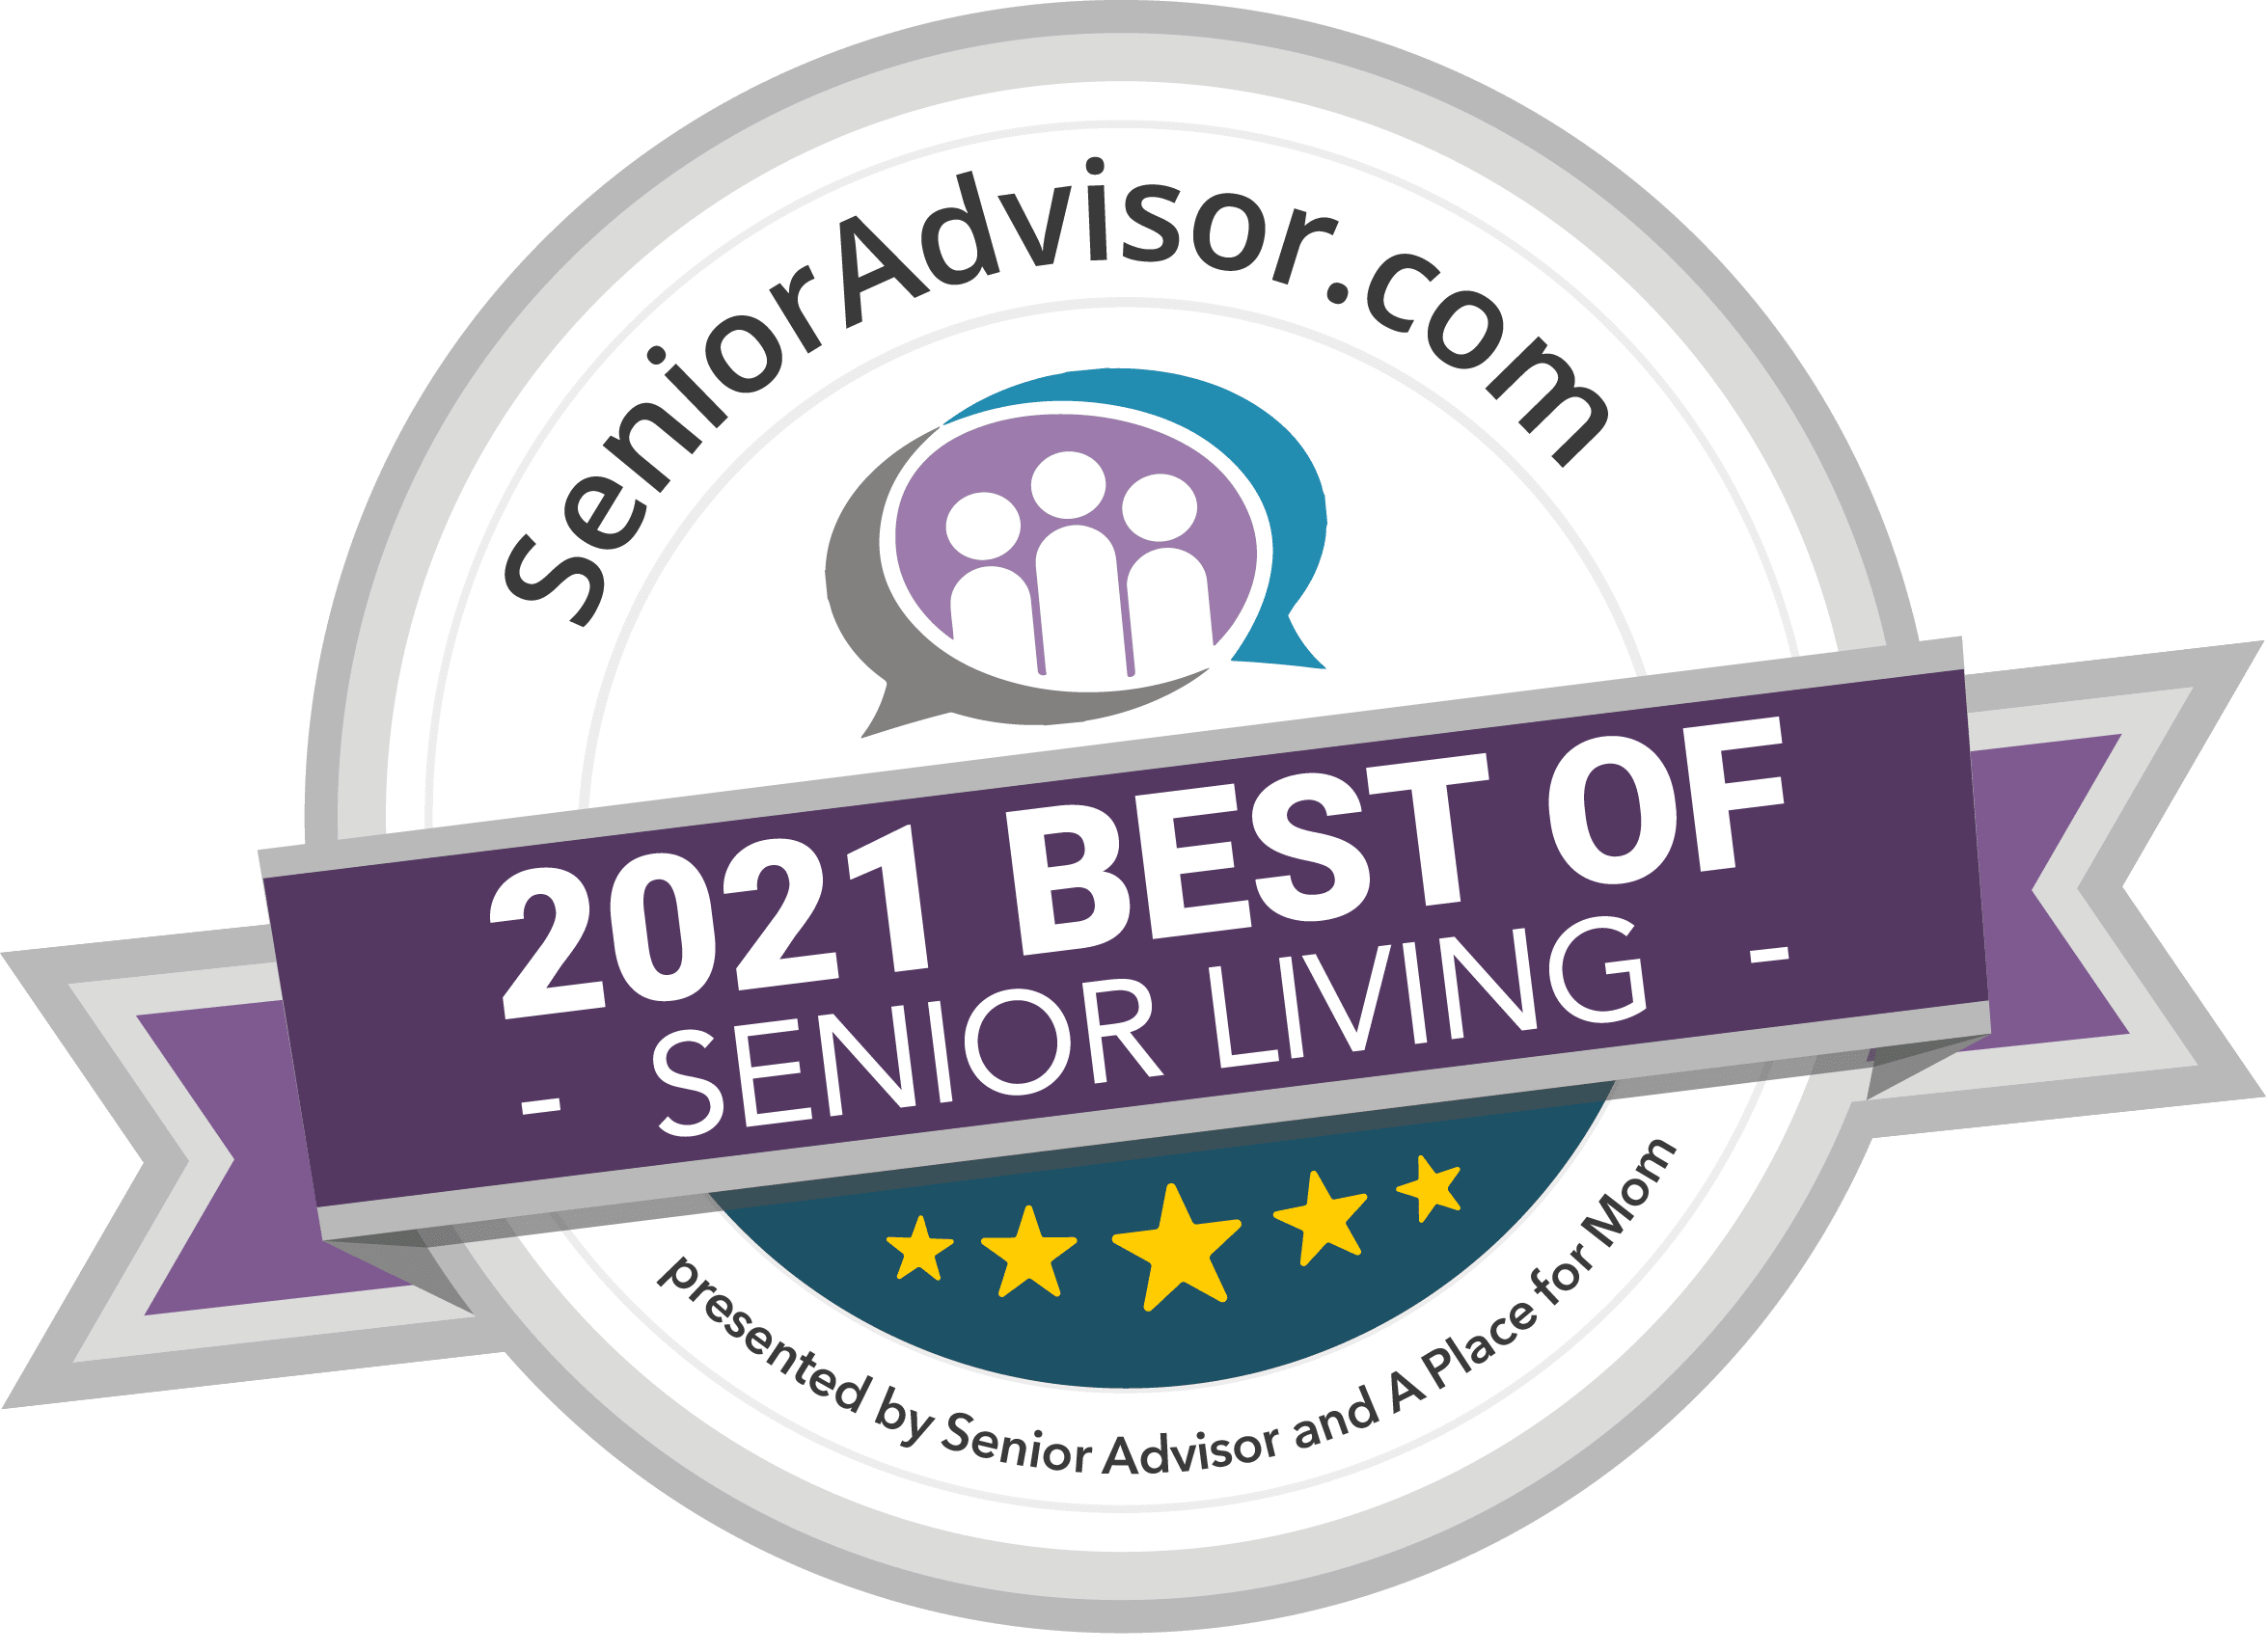 Senioradvisor.com best of 2020 senior living